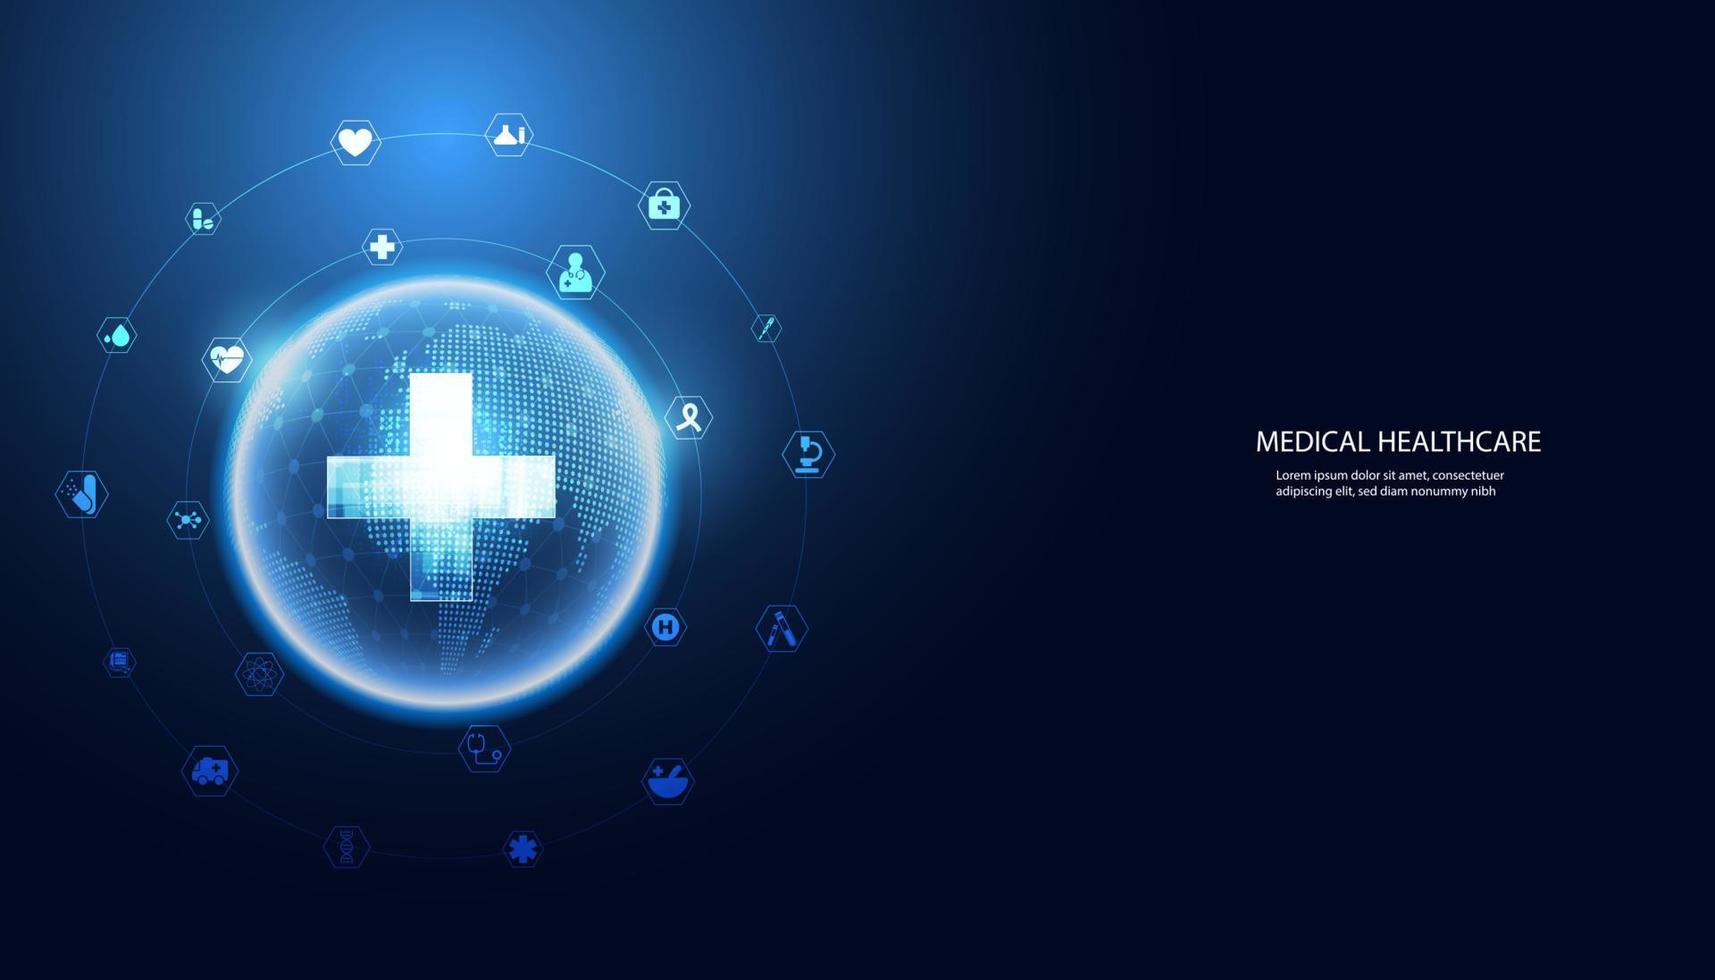 la ciencia de la salud abstracta consiste en salud más círculo digital e iconos del mundo concepto de tecnología médica moderna sobre fondo azul futuro de alta tecnología. vector